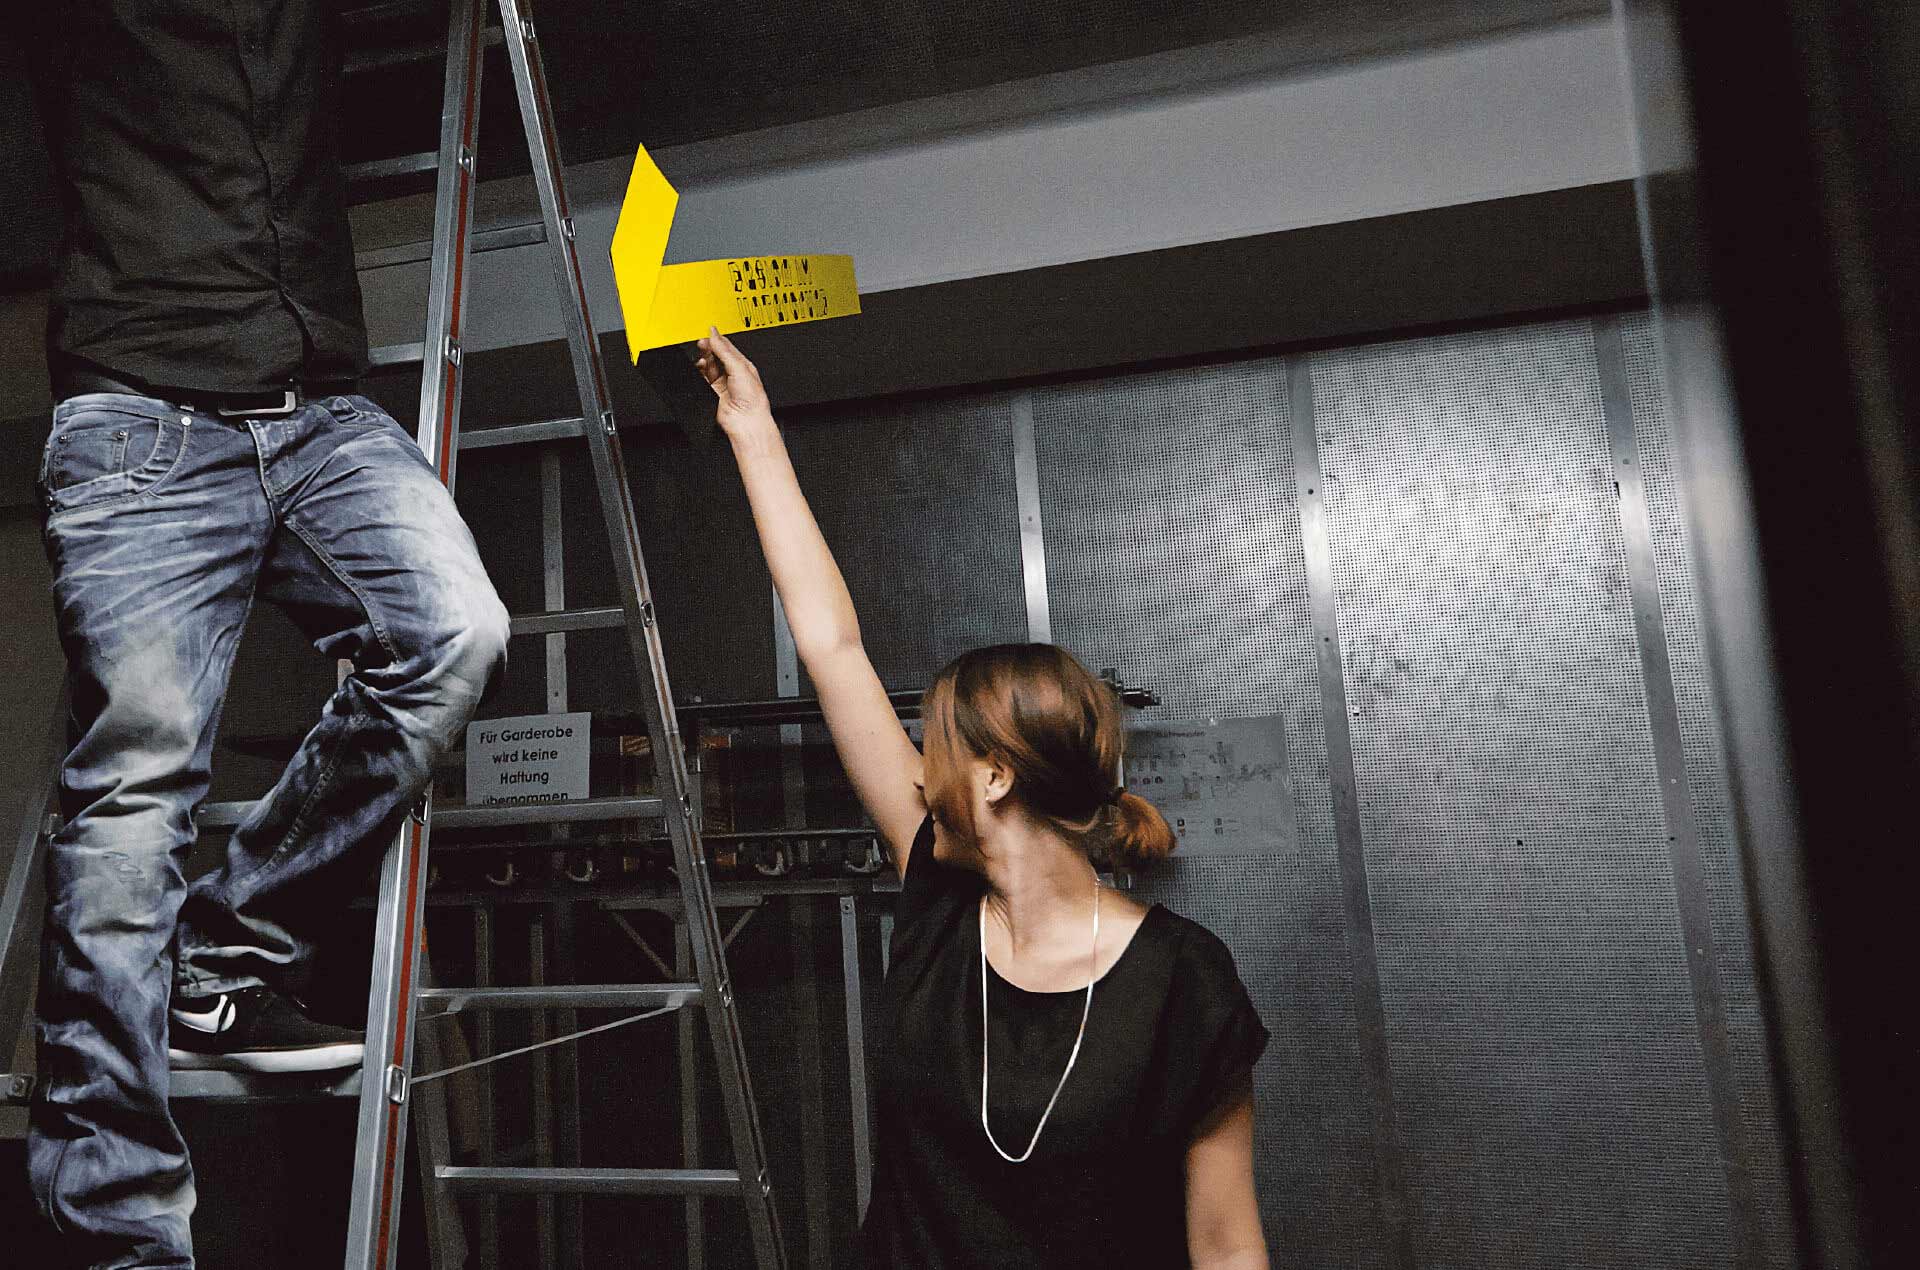 Frau beim Event Aufbau reicht Mann auf Leiter ein gelbes Papier mit Schriftzug